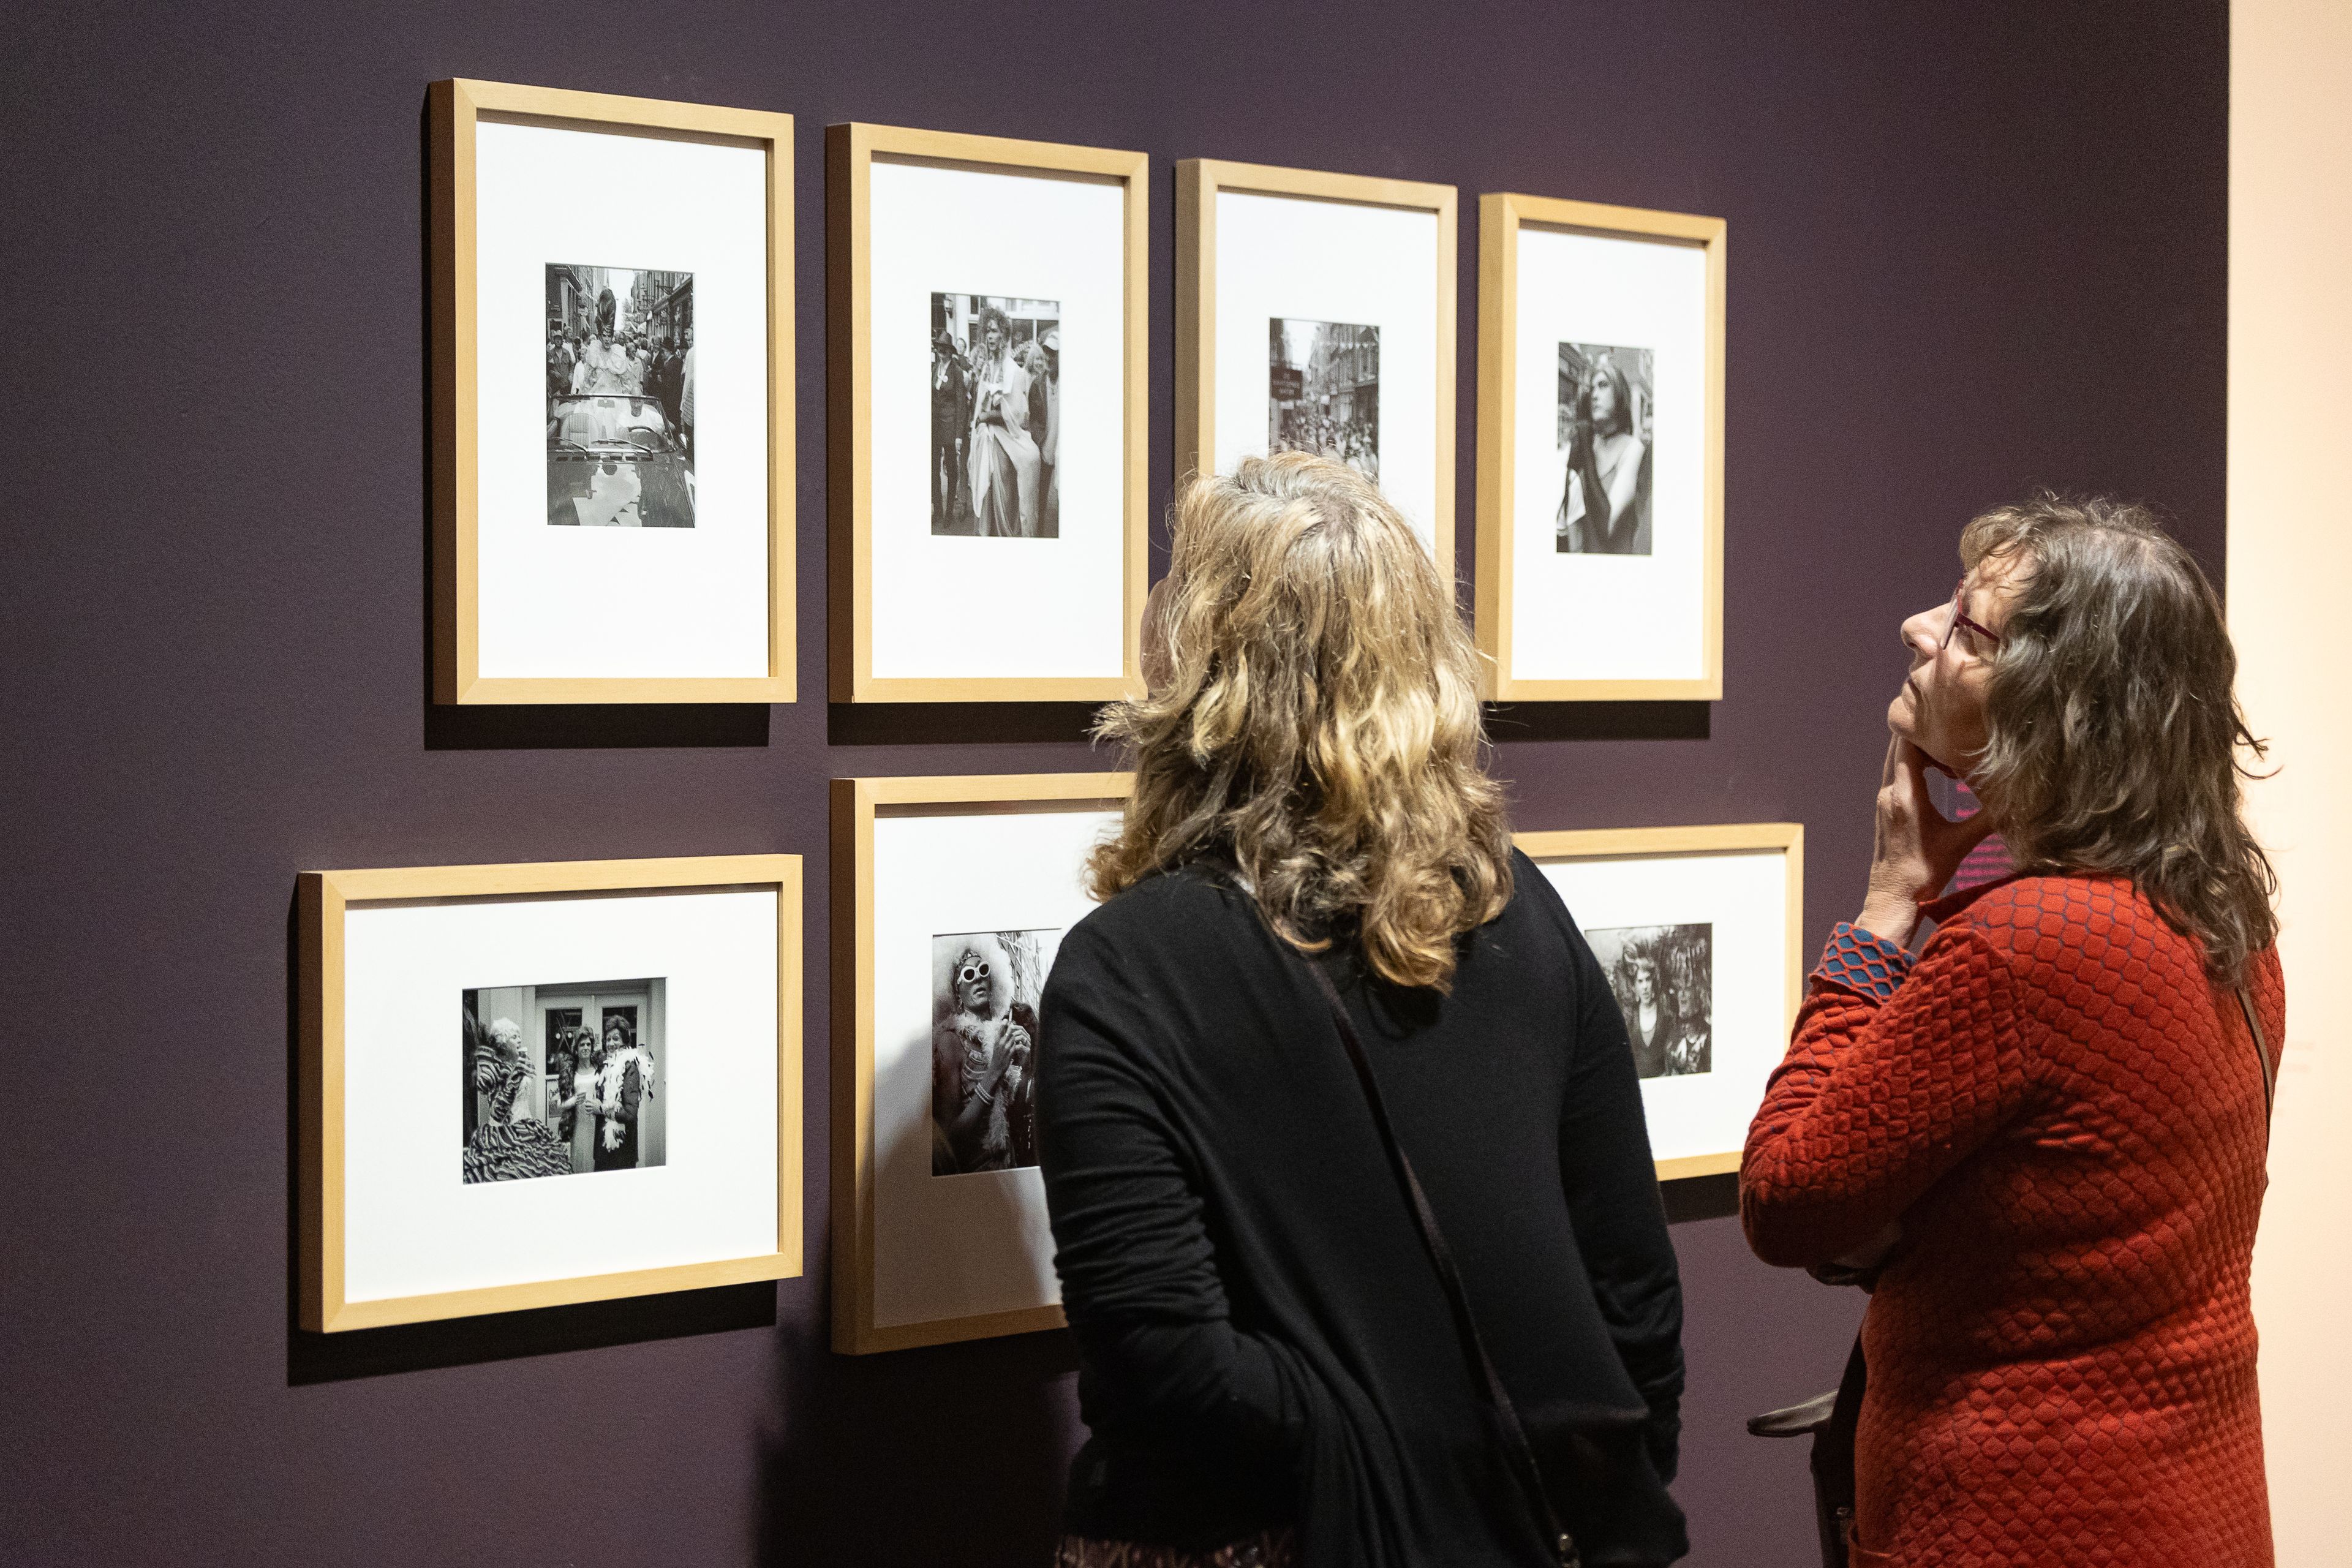 Bezoekers bekijken de foto's van ballroom tijdens hun bezoek aan tentoonstelling The Art of Drag in het Frans Hals Museum locatie HAL.